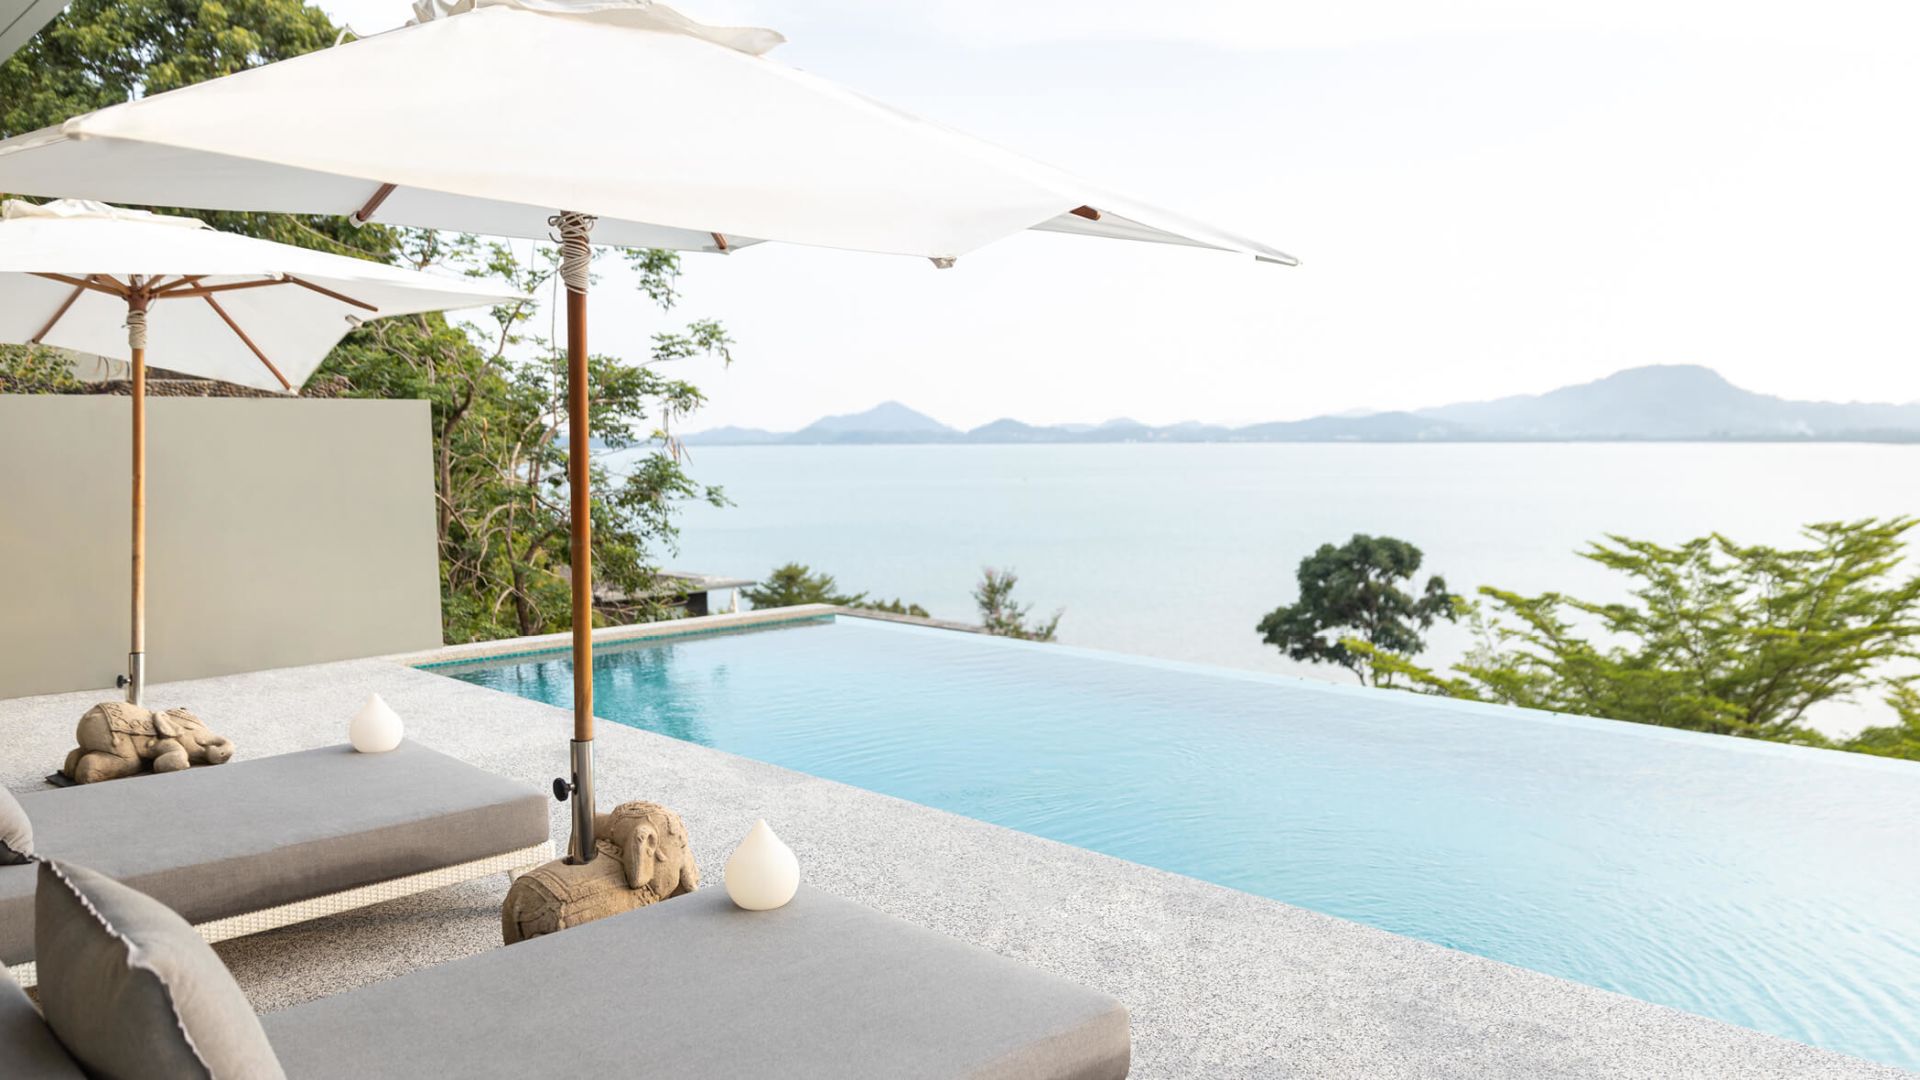 Infinity pool overlooking the Andaman Sea - Image